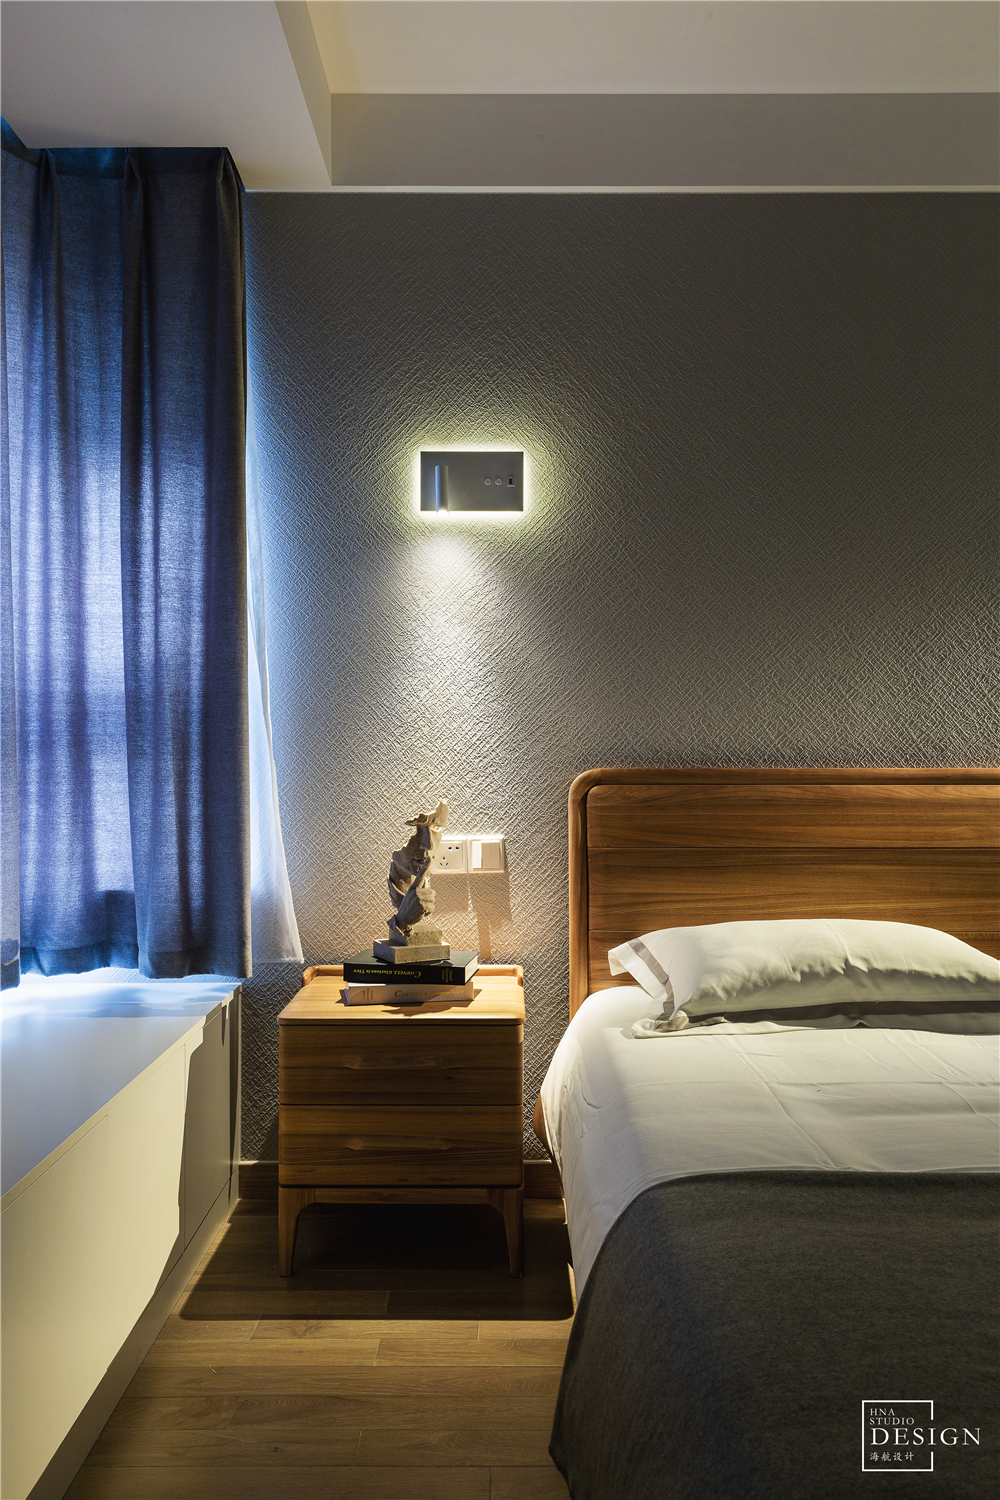 卧室床头柜2装修效果图简单北欧风卧室壁灯设计图北欧风卧室设计图片赏析